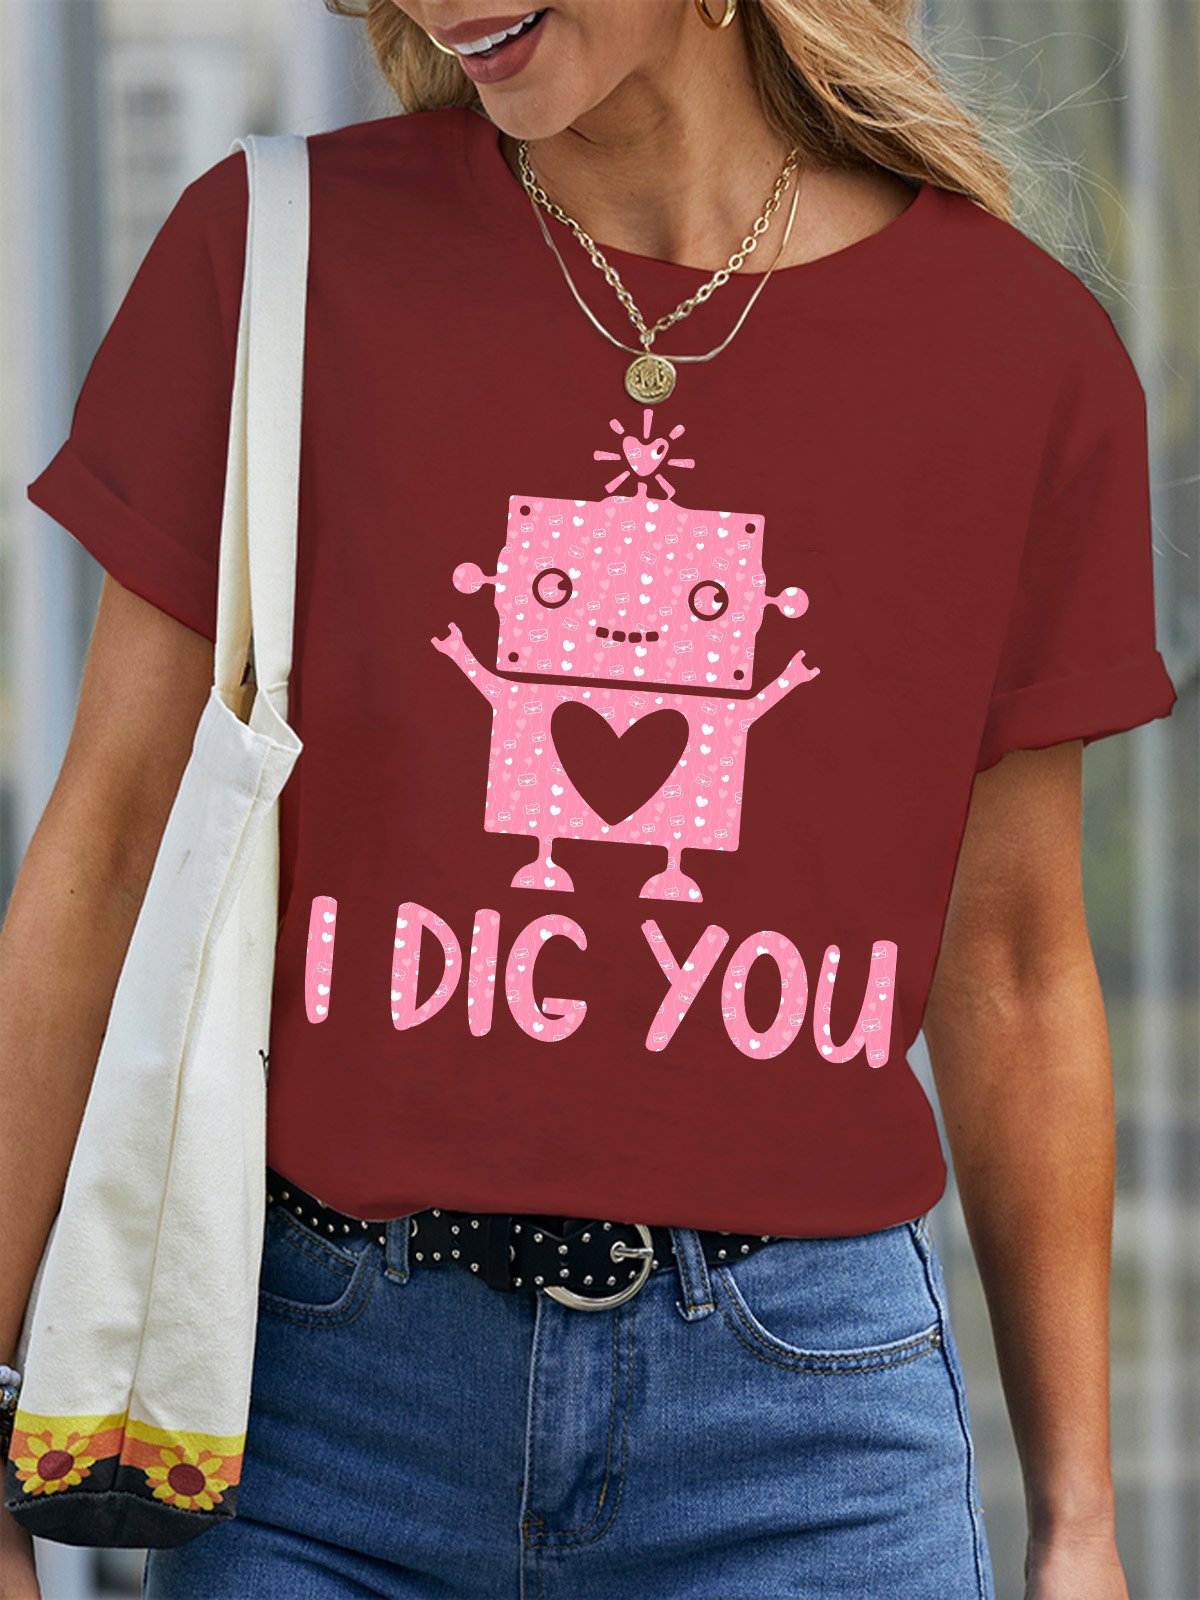 I Dig You Women's T-Shirt